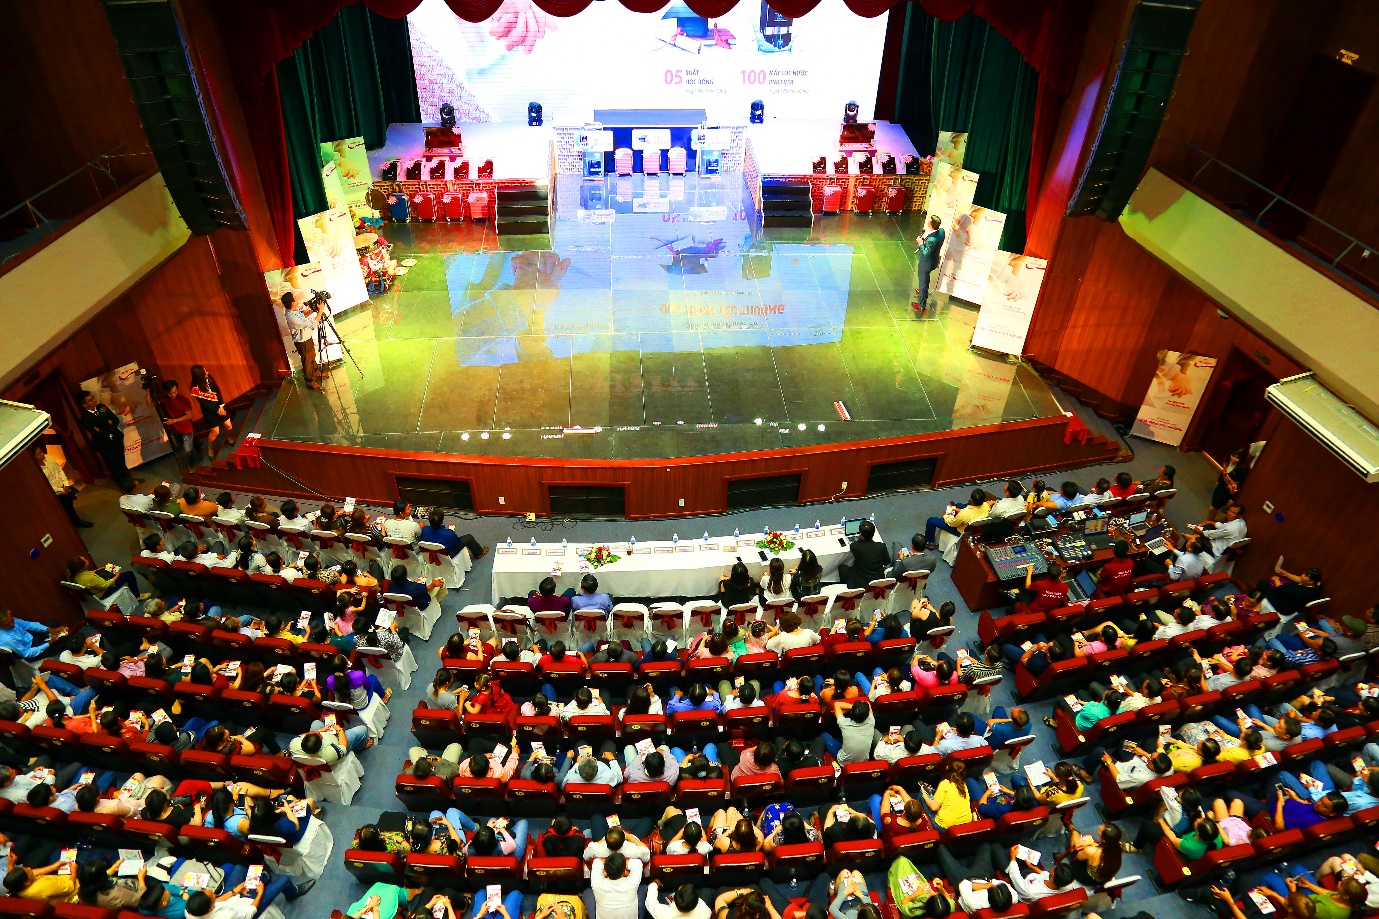 Nhà hát Cao Văn Lầu ở thành phố Bạc Liêu là nơi diễn ra lễ trao giải chương trình “Quà trọn yêu thương” của Prudential hôm 23-2.